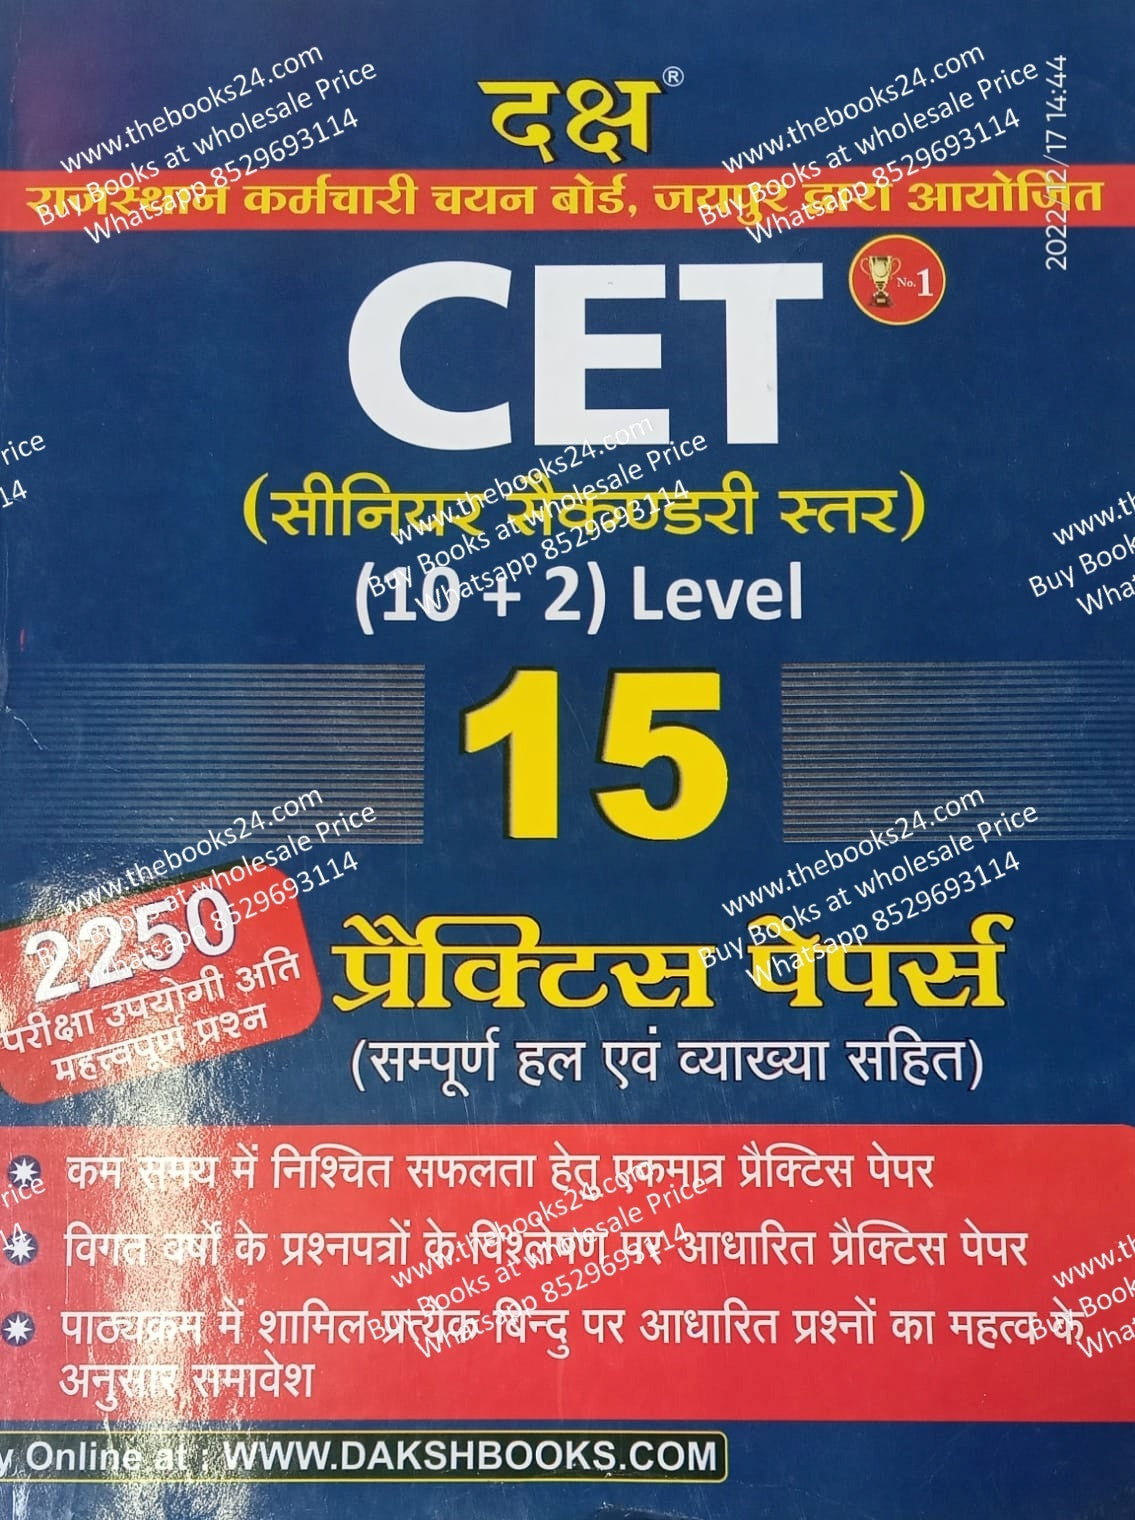 Daksh CET 10+2 level 15 practice paper